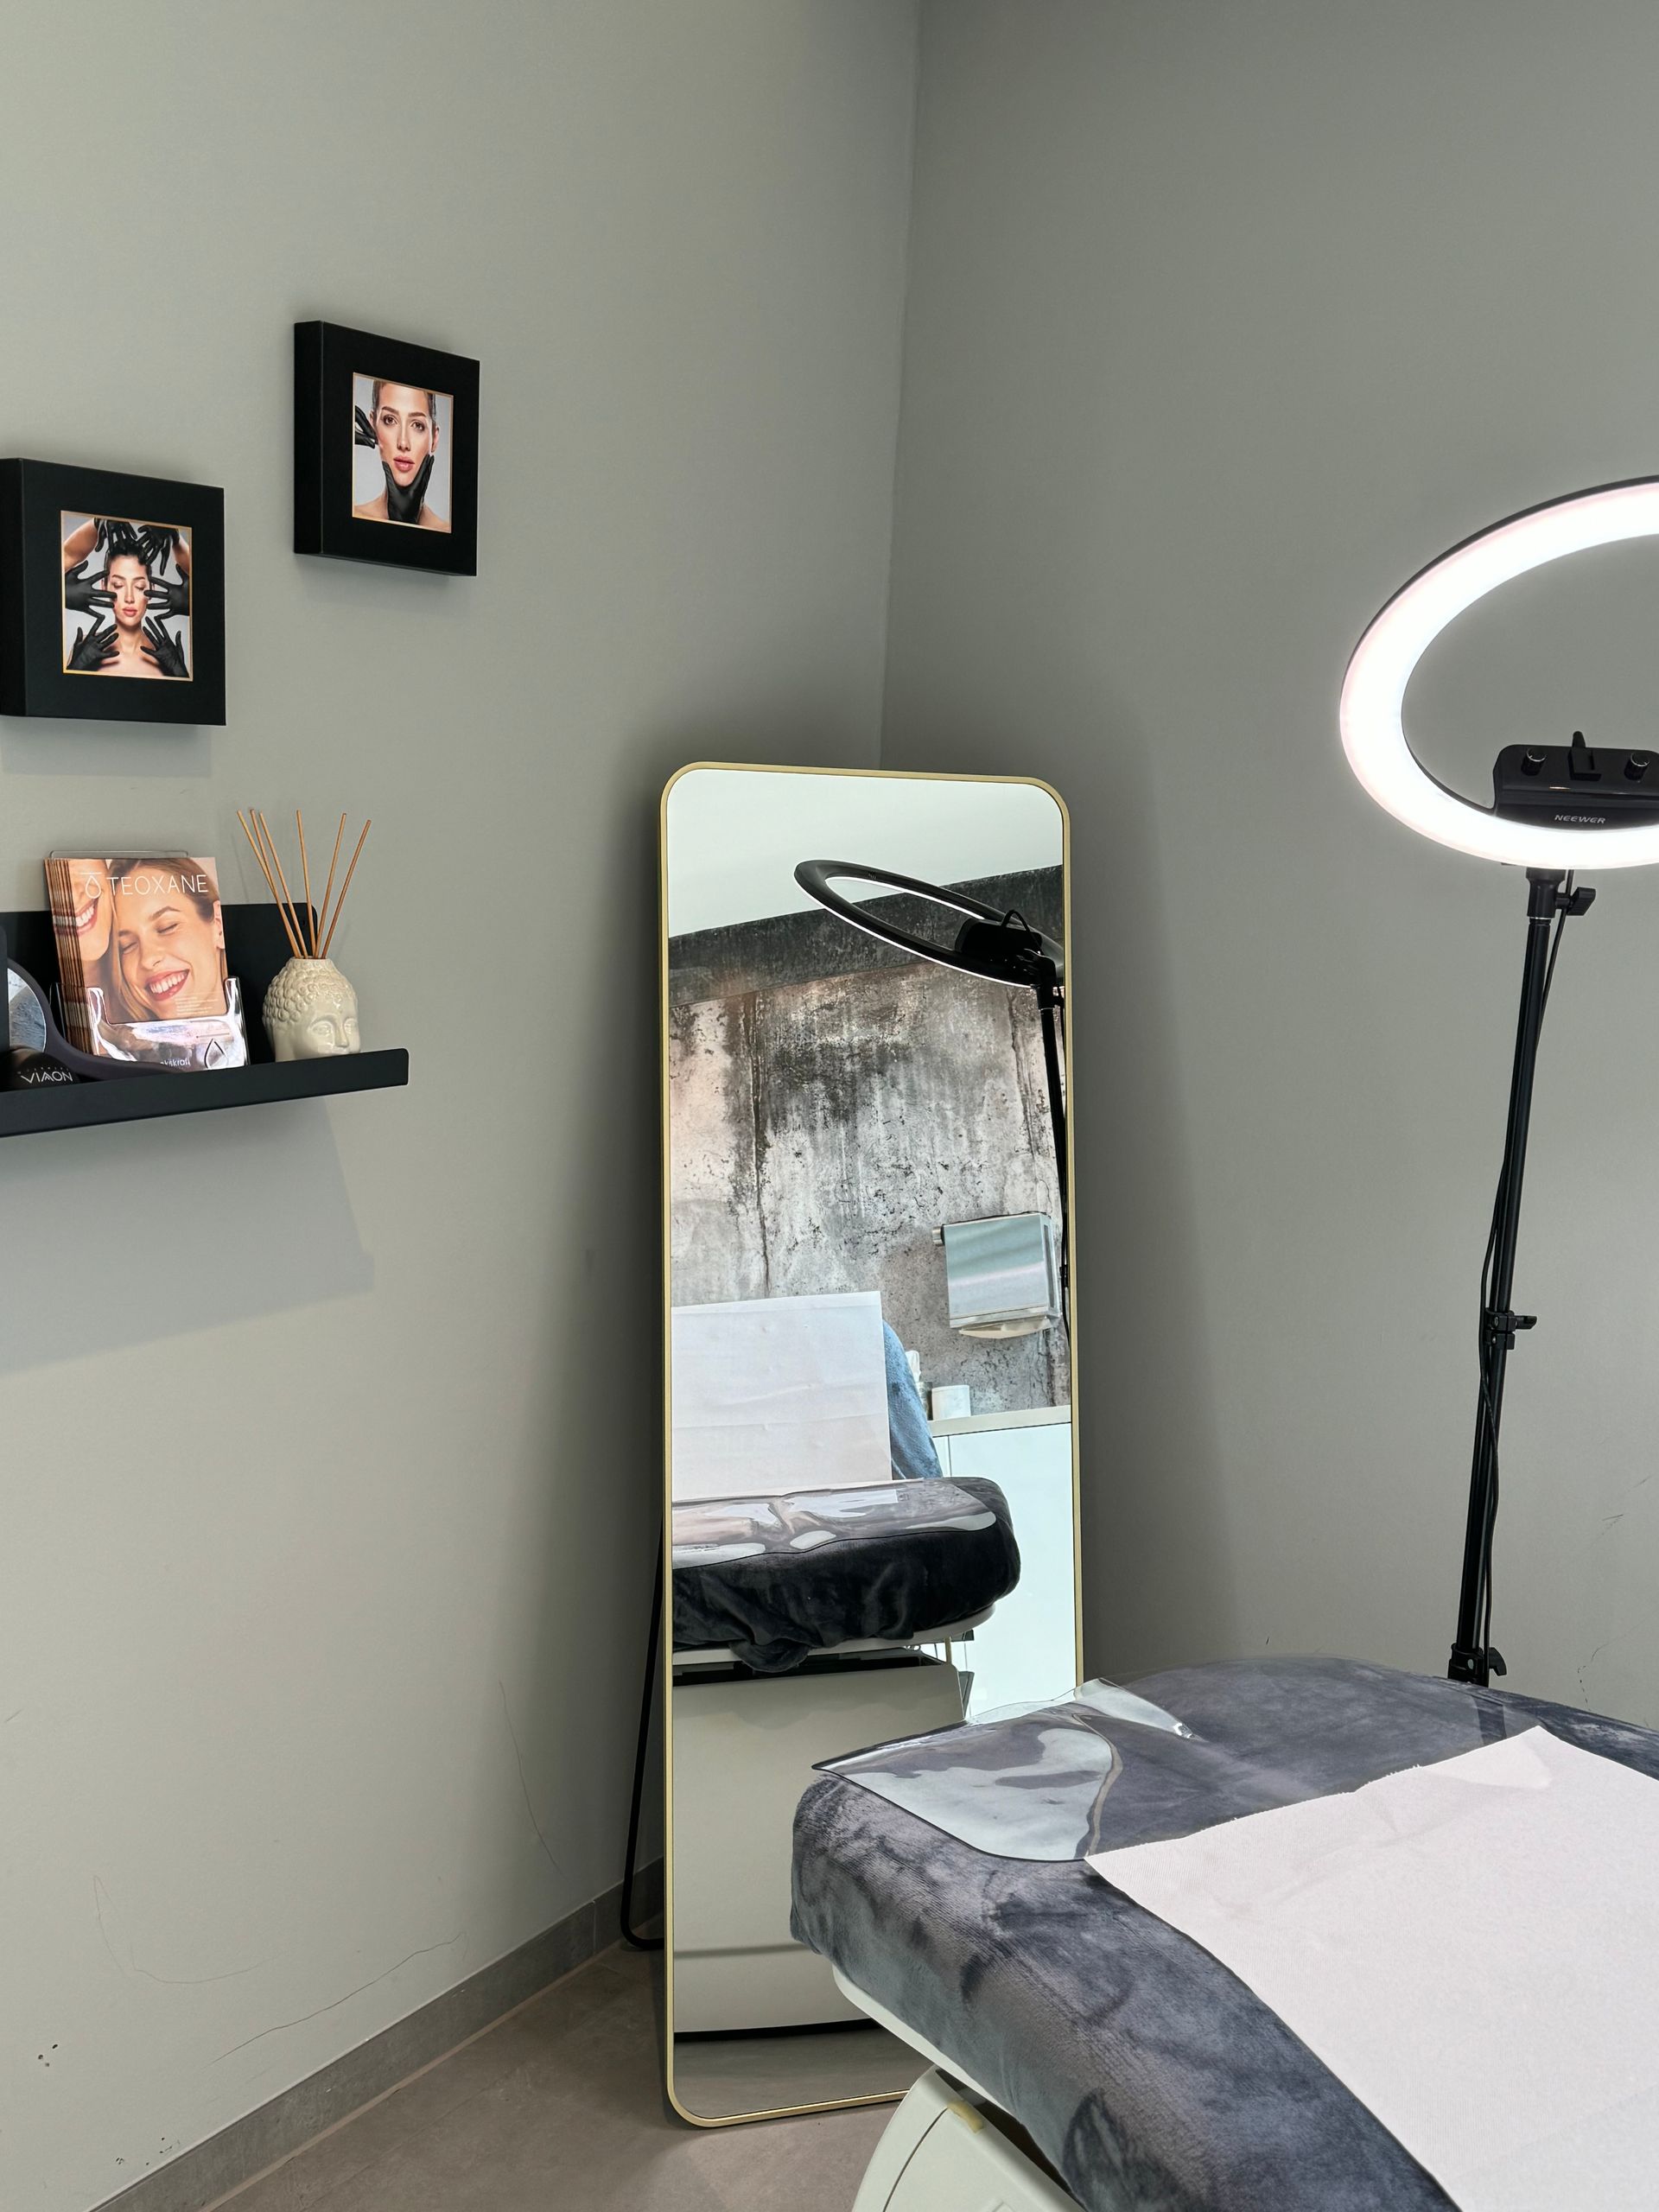 Ein Zimmer mit Bett, Spiegel, Lampe und Bildern an der Wand.